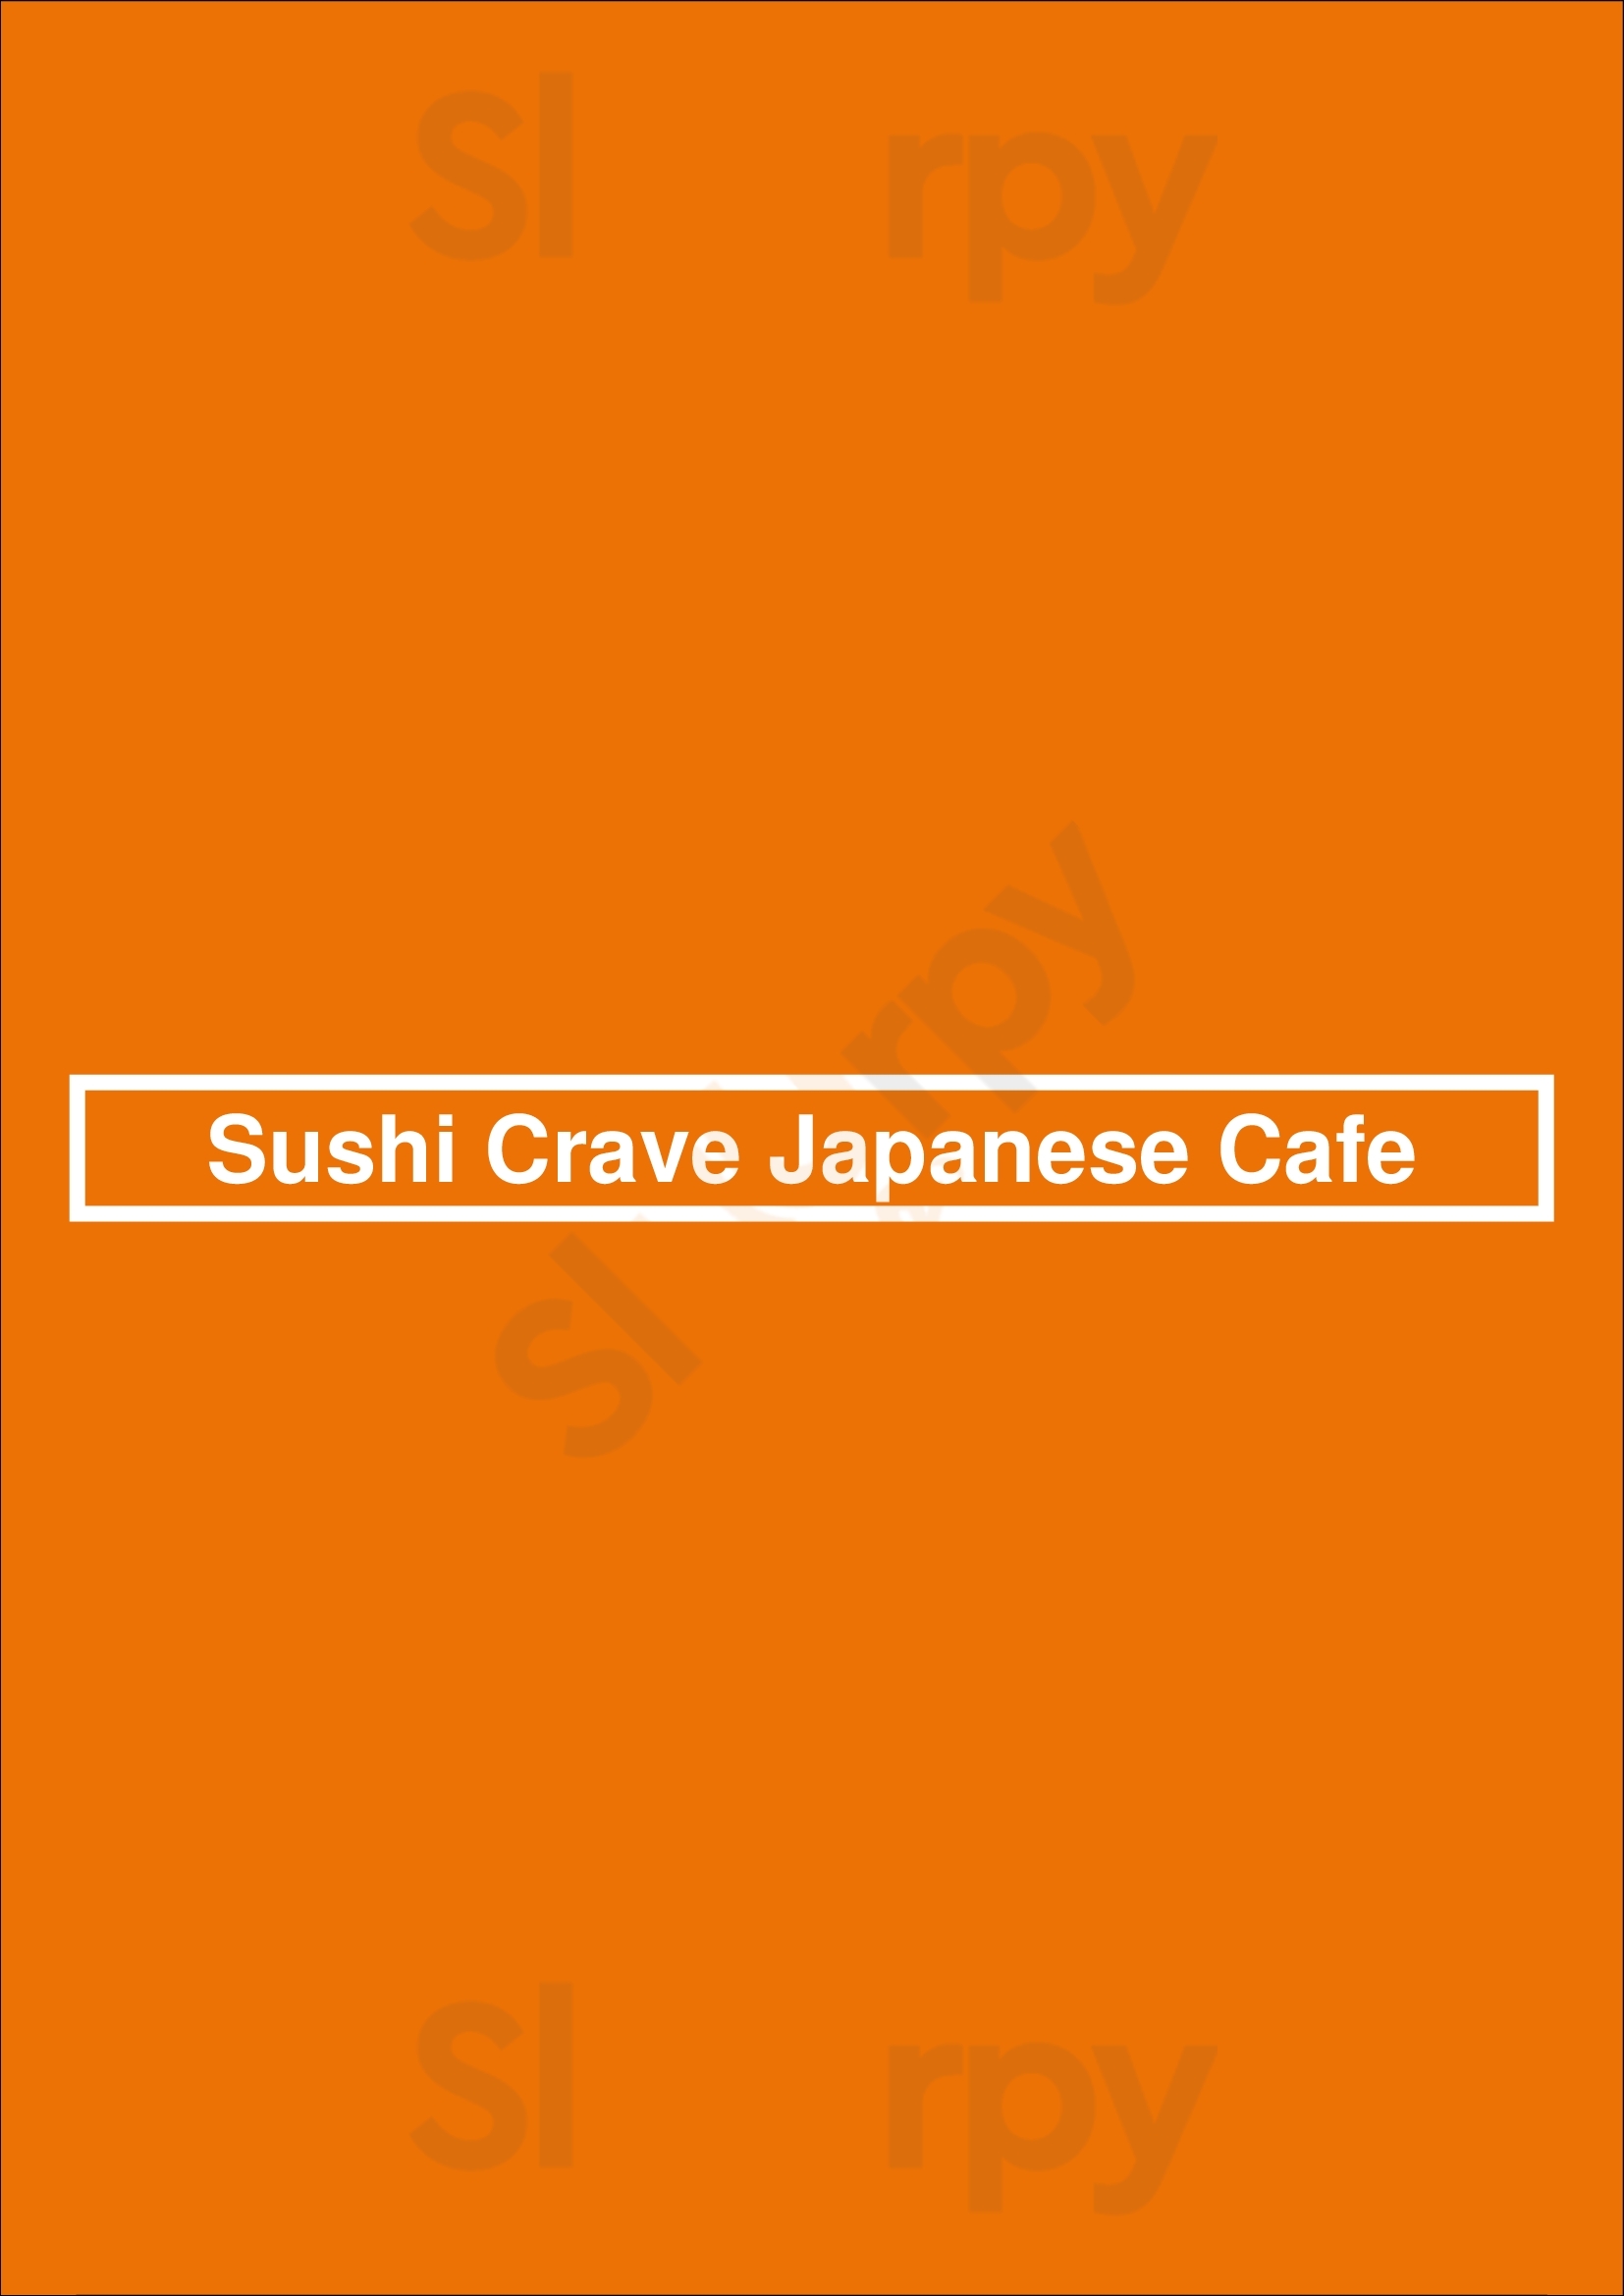 Y93 Sushi Crave Japanese Cafe Calgary Menu - 1